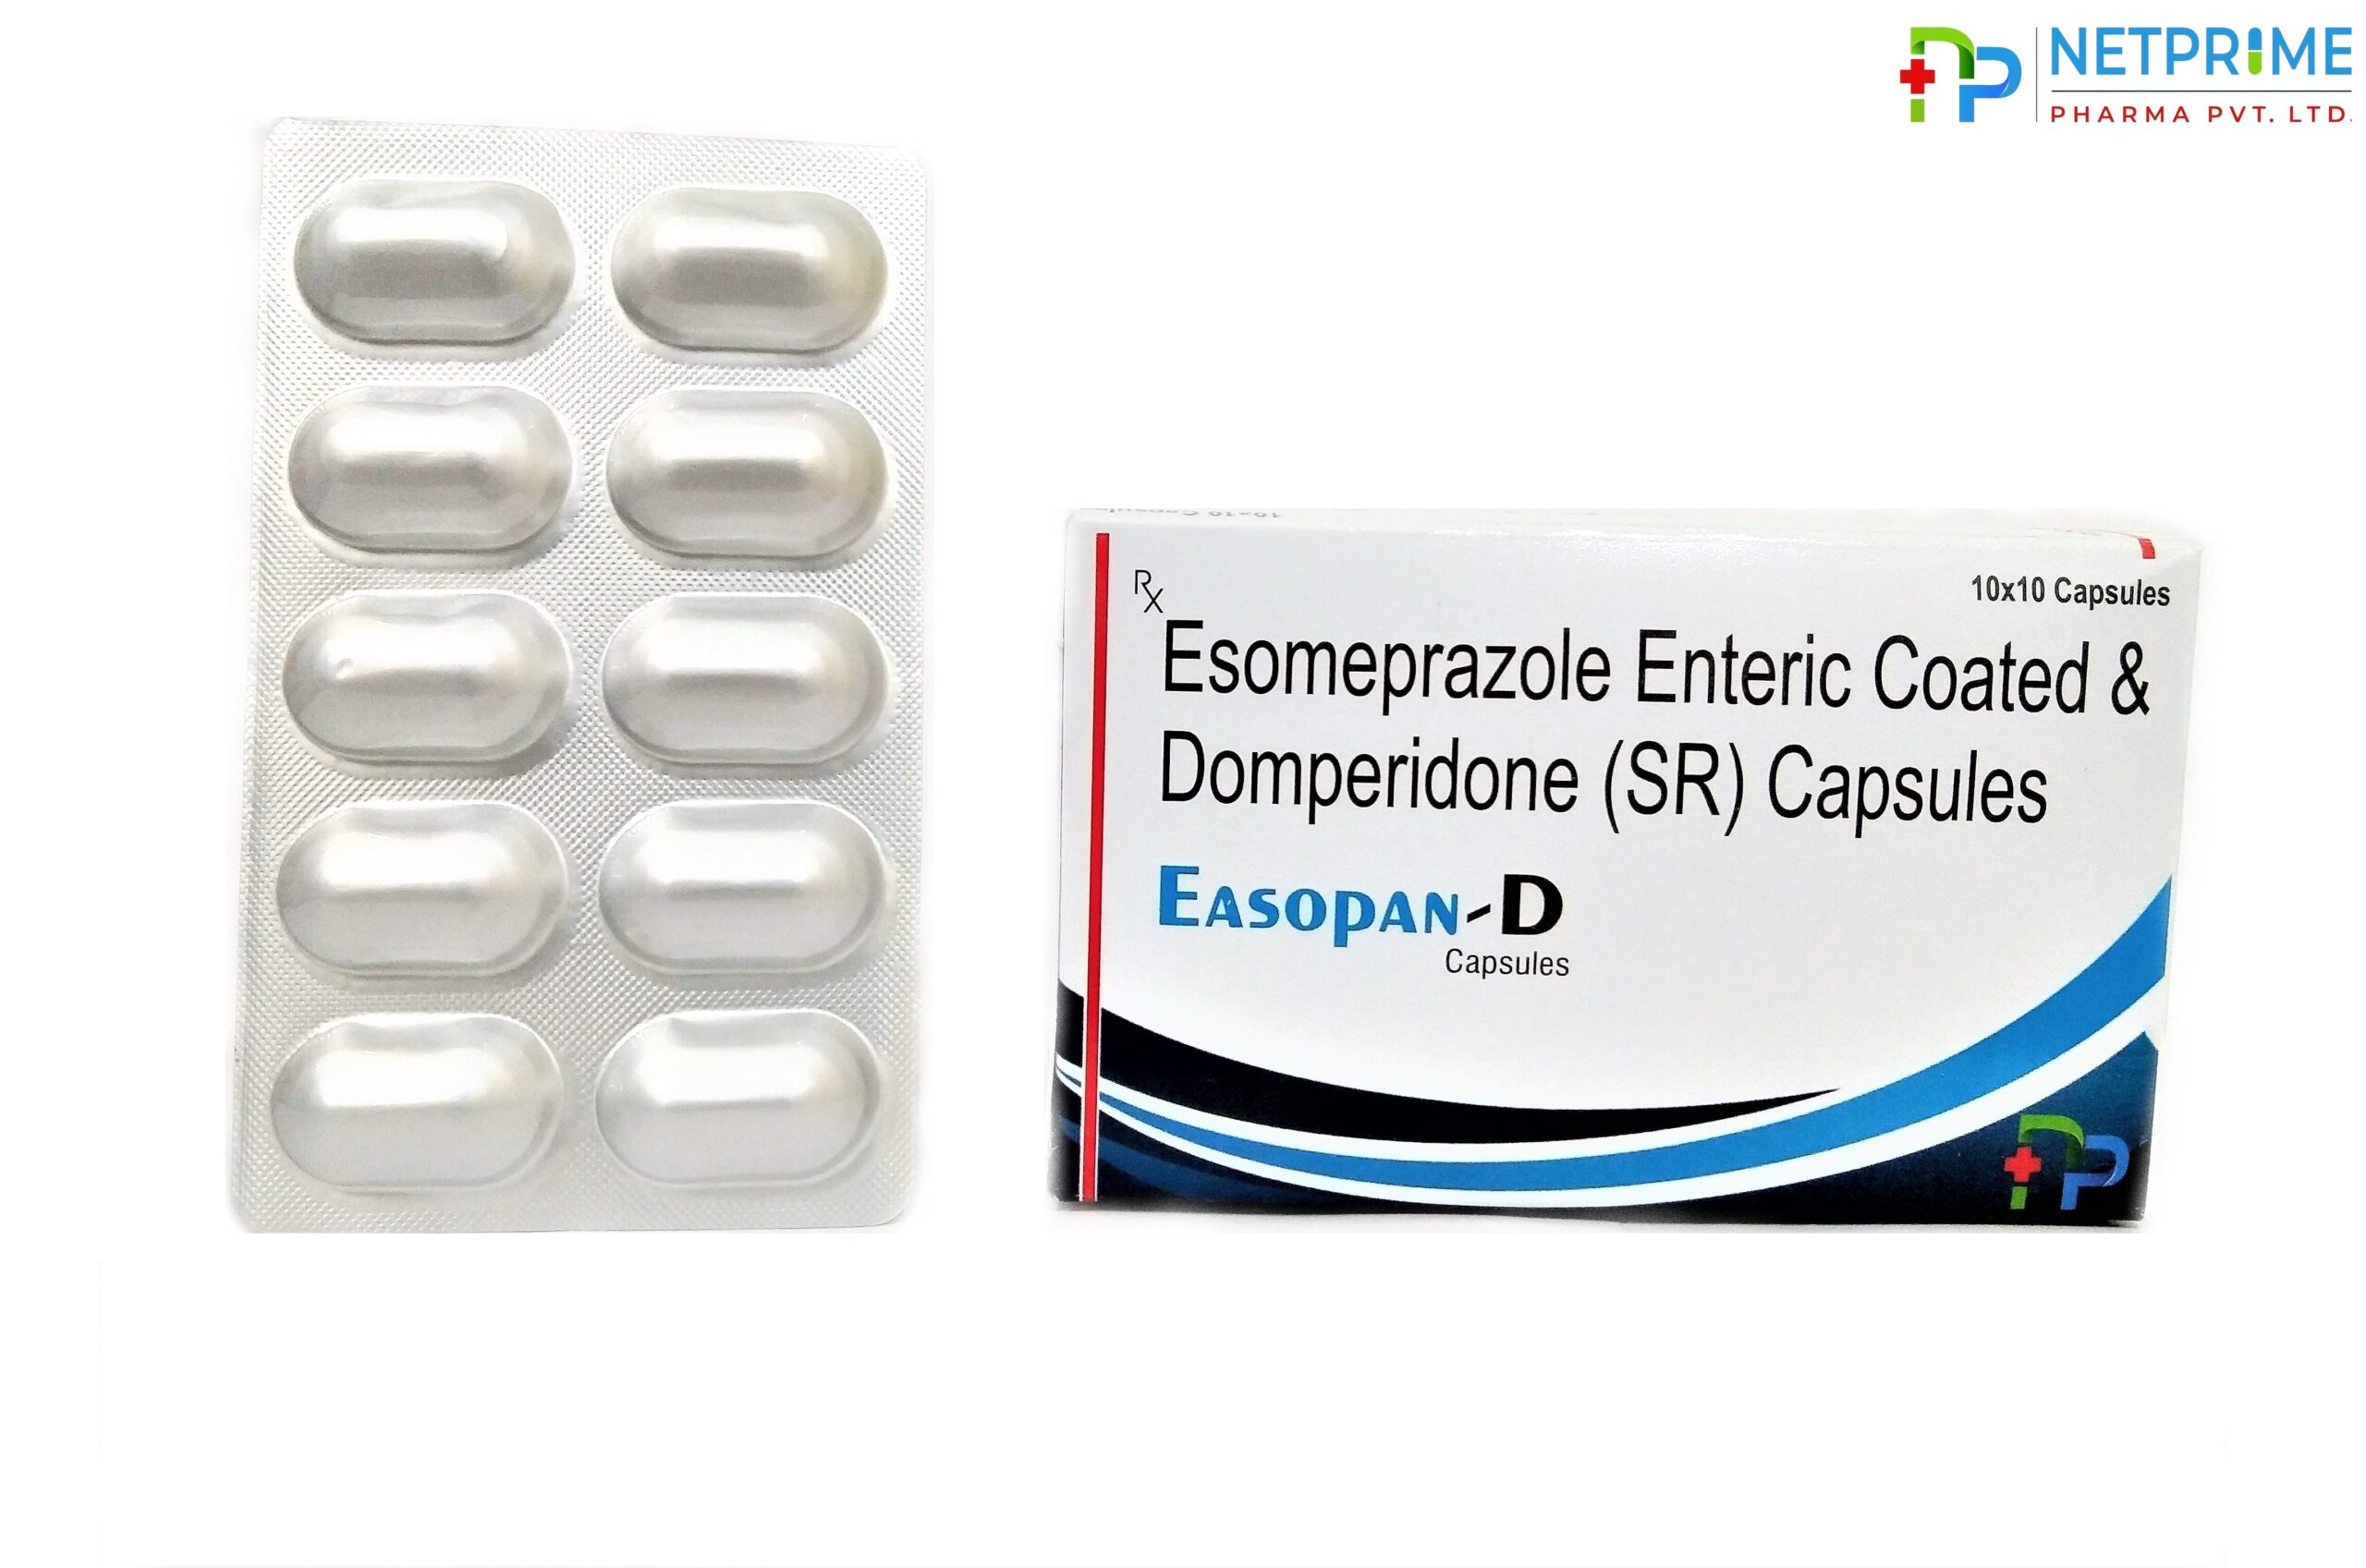 Esomeprazole 40mg and Domperidone (SR) 30 mg Capsules